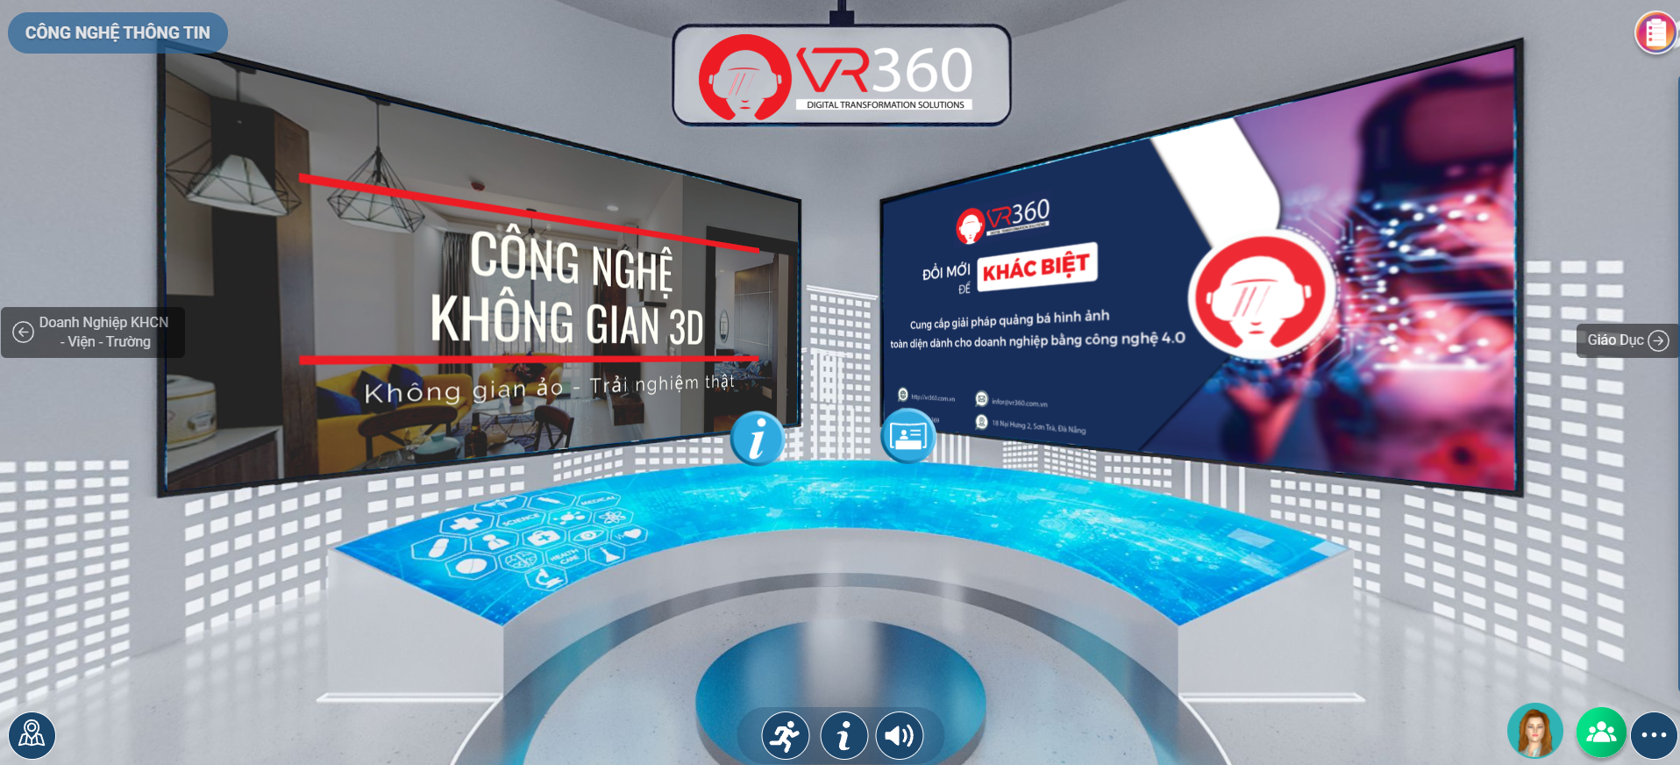 Đà Nẵng: Hội thảo ứng dụng triển lãm thực tế ảo giúp phát triển thị trường khoa học công nghệ - Ảnh 3.